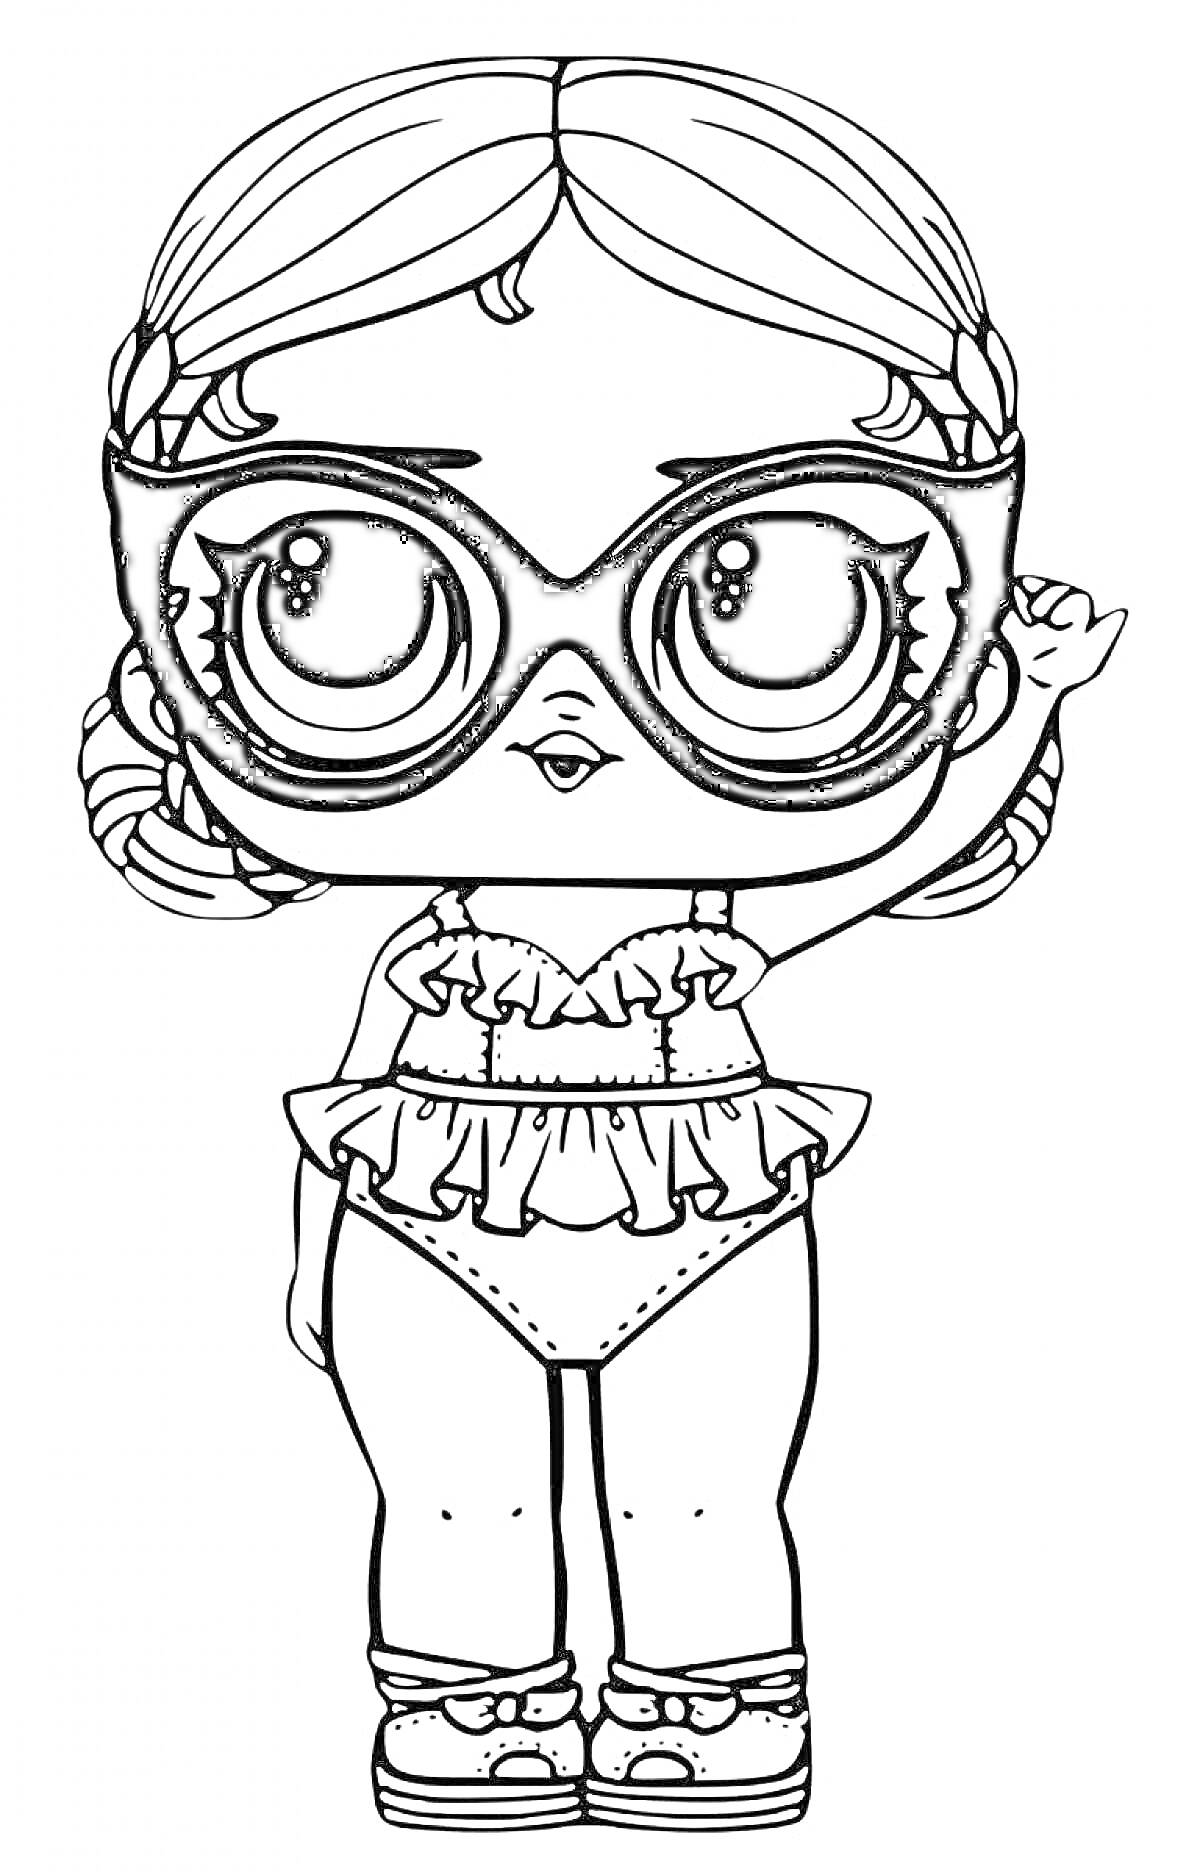 Раскраска Кукла ЛОЛ в очках, с заплетенными волосами, в купальнике и кроссовках